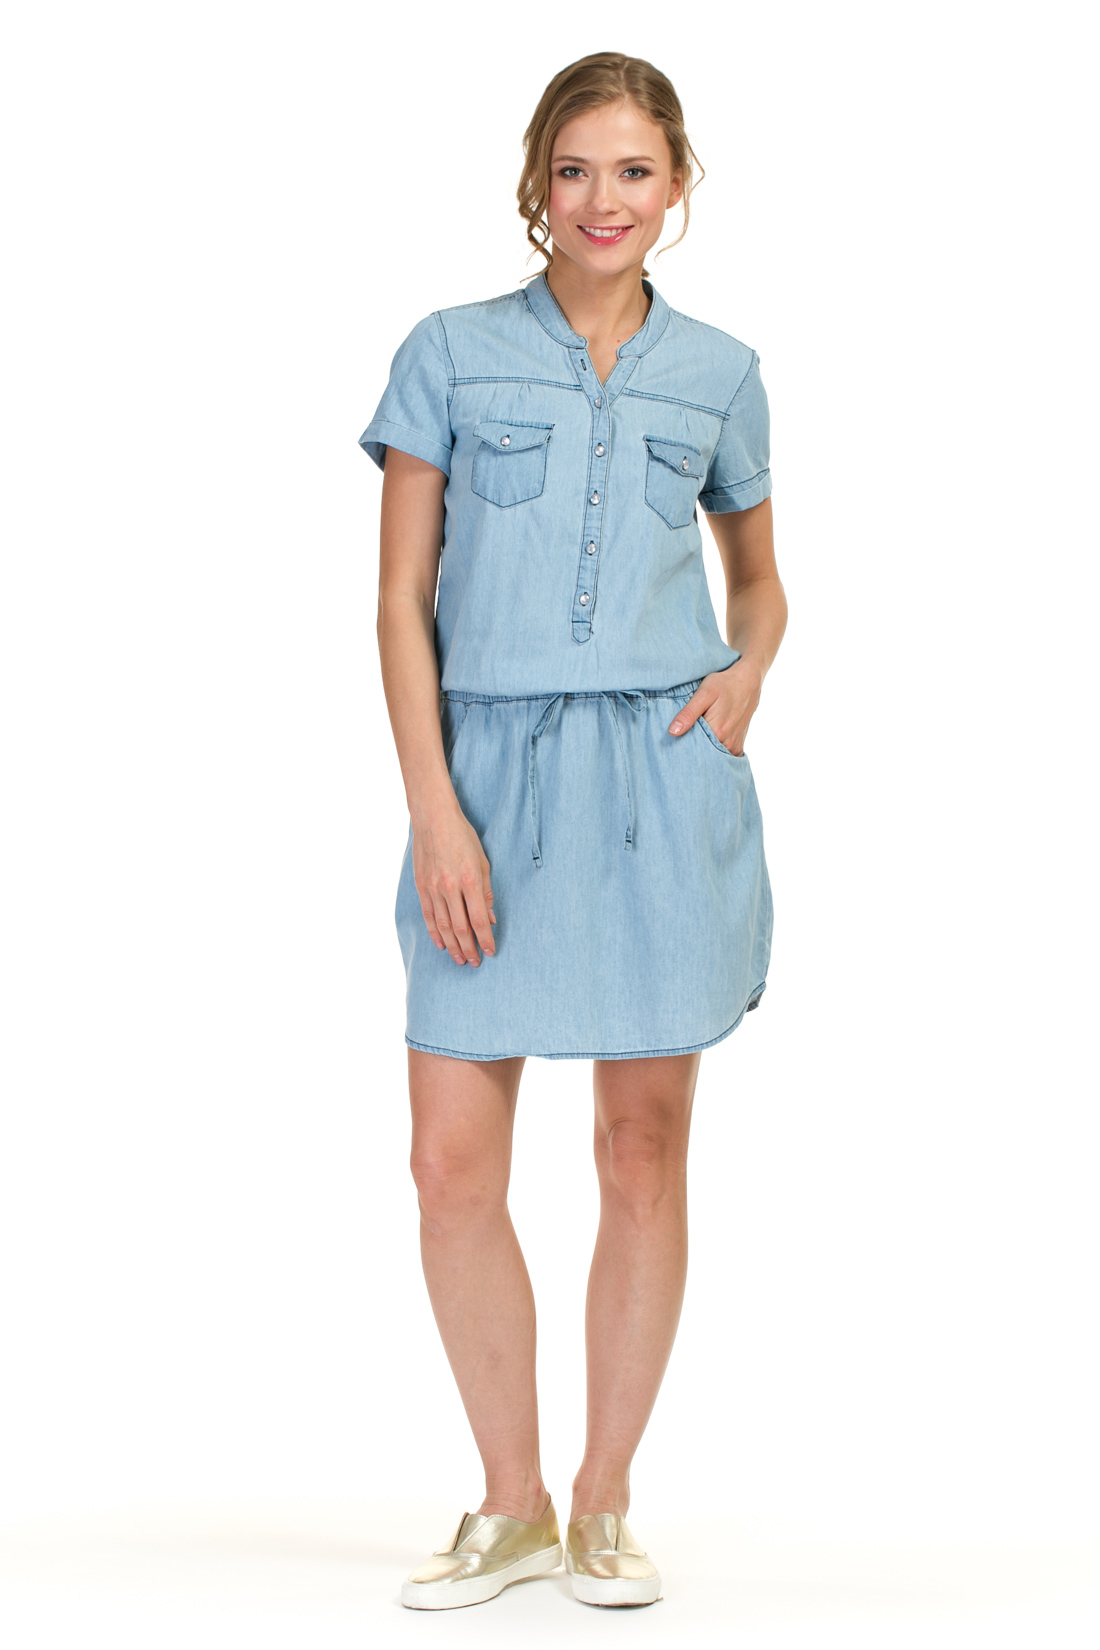 Платье-рубашка из денима (арт. baon B457087), размер XL, цвет light blue denim#голубой Платье-рубашка из денима (арт. baon B457087) - фото 1